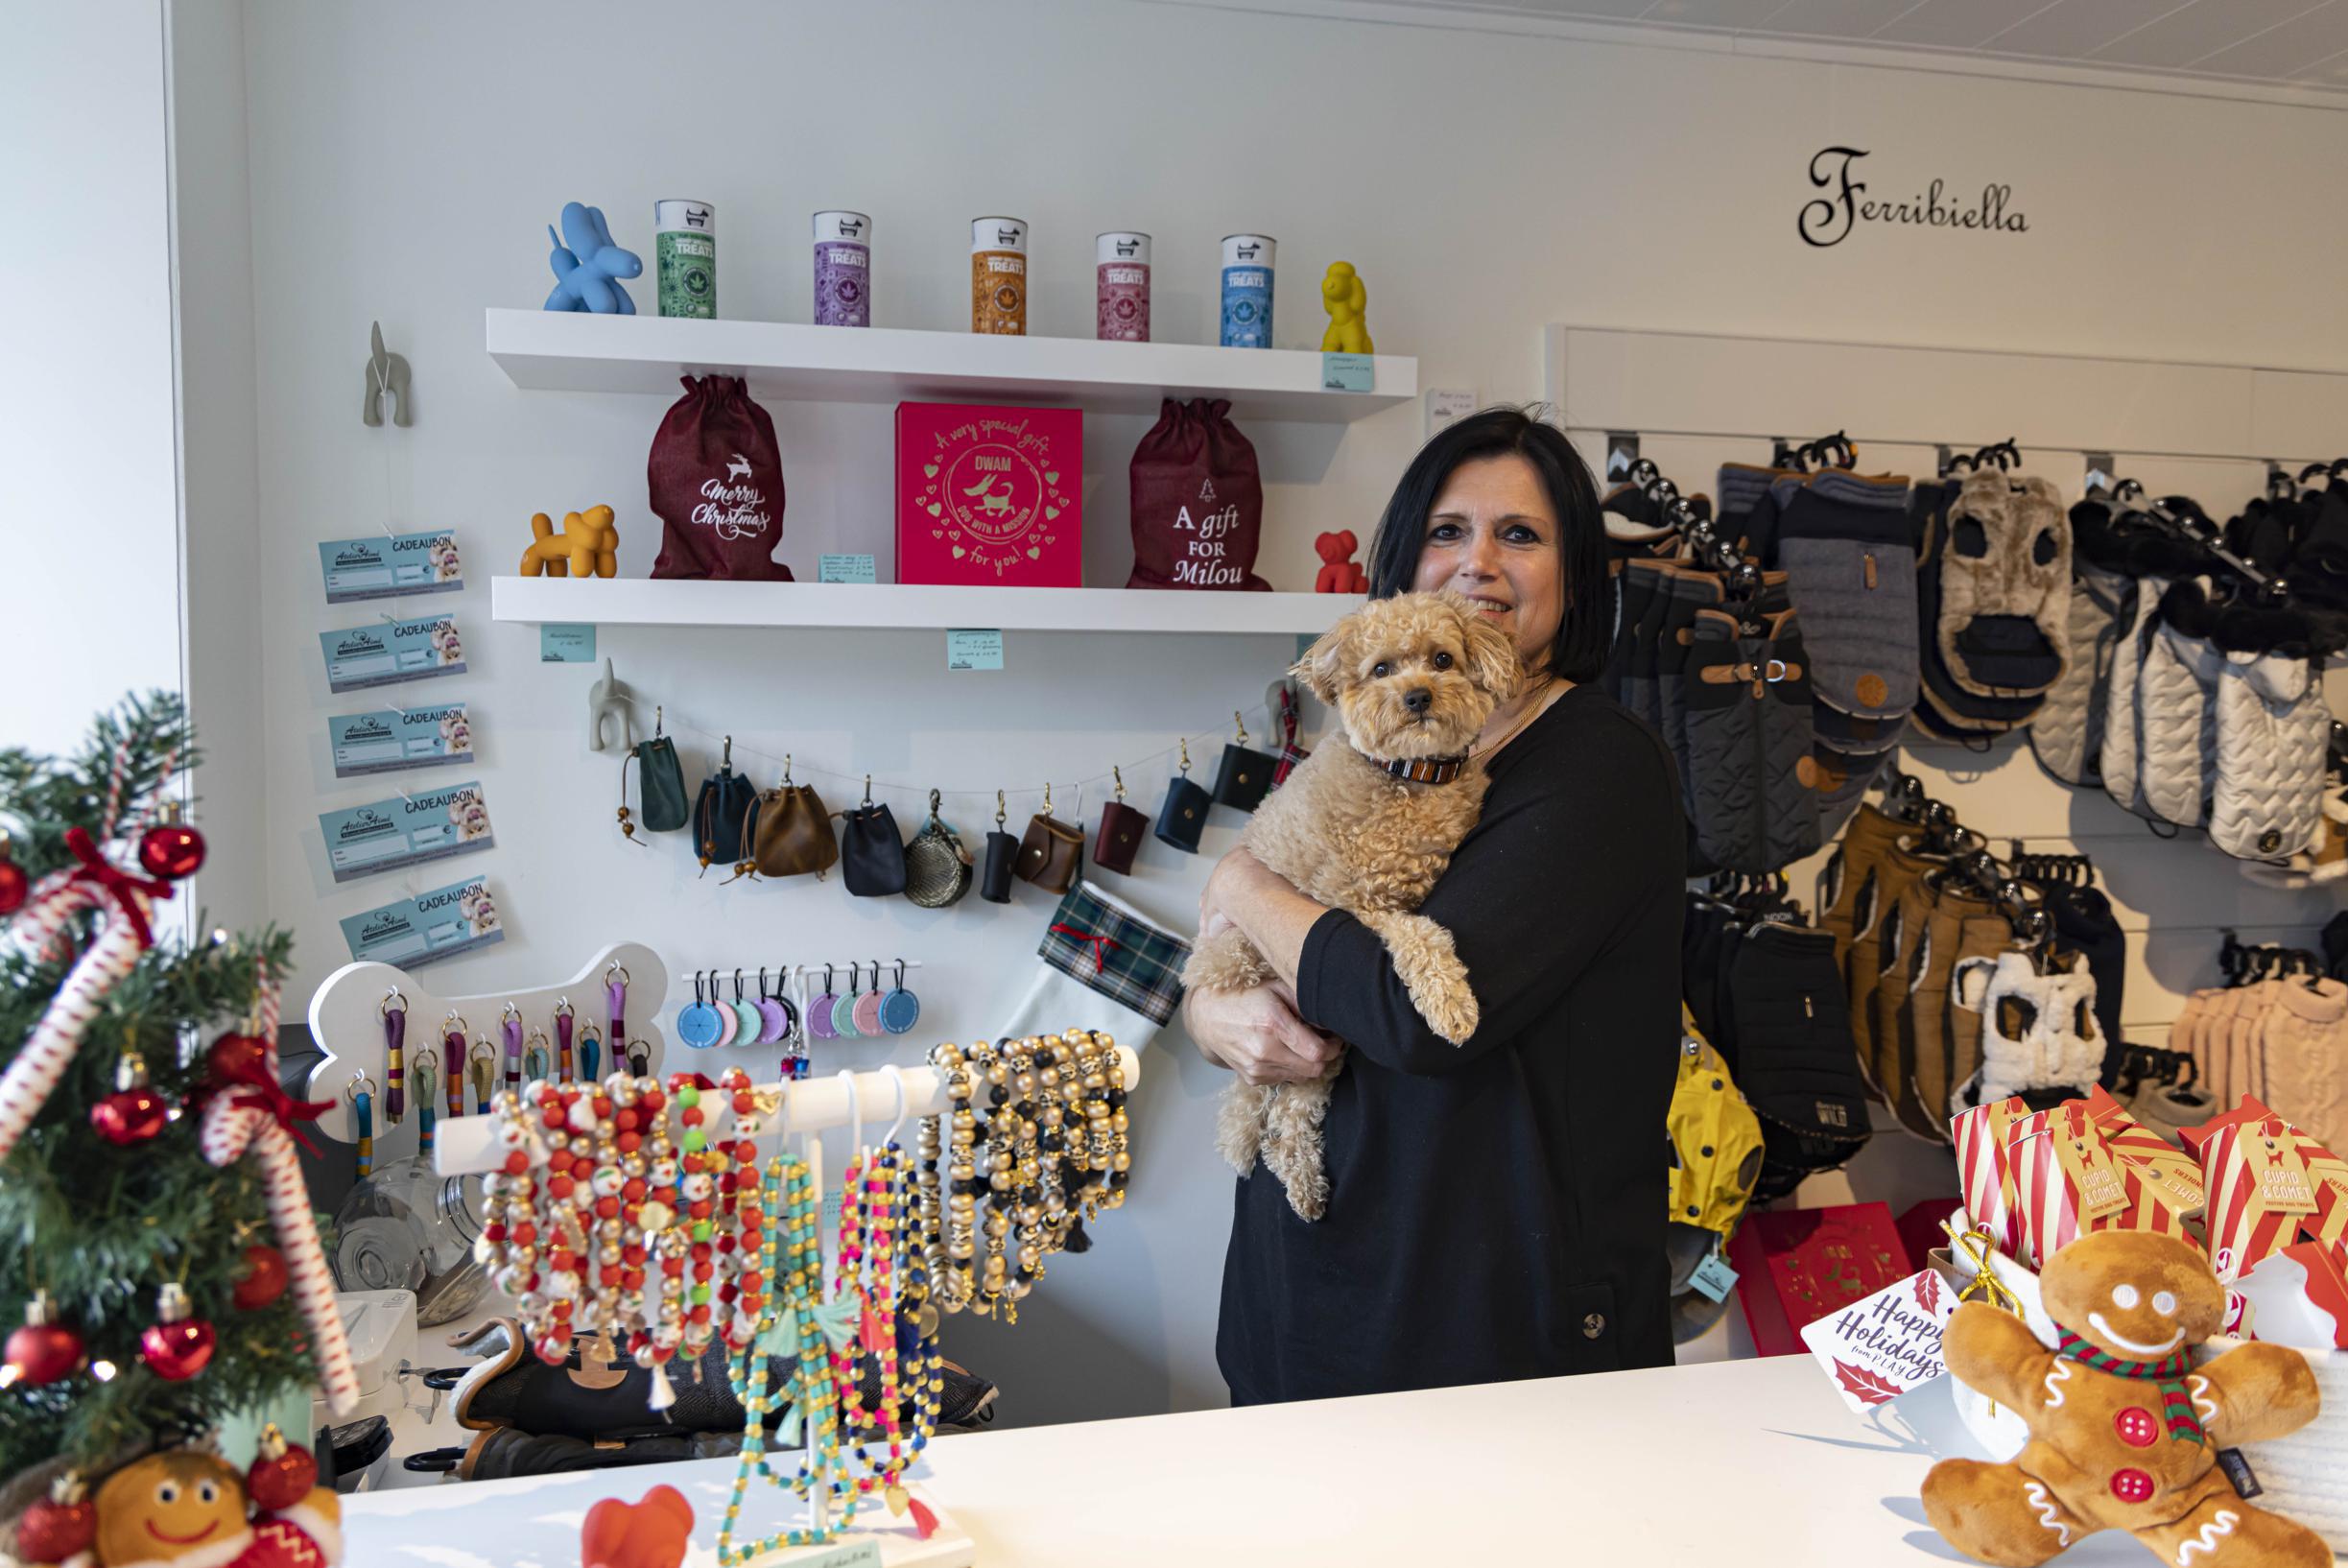 Keizer dorp supermarkt France (47) opent met Atelier Aimé eigen hondenboetiek vol accessoires:  “Heel wat mensen hebben hun weg naar hier gevonden” (Aalst) | Het  Nieuwsblad Mobile